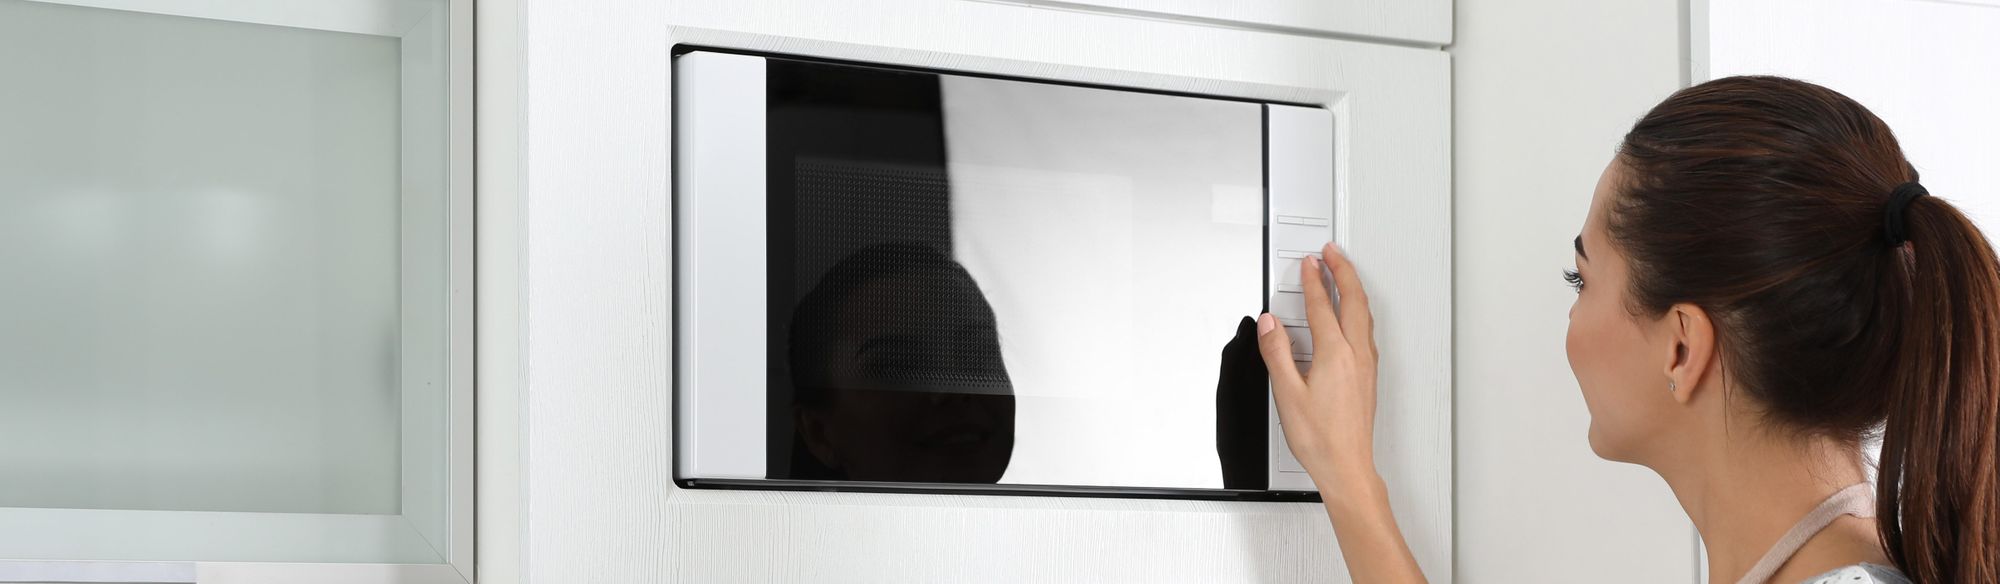 Mulher manuseando micro-ondas de embutir com porta espelhada instalado numa parede branca 